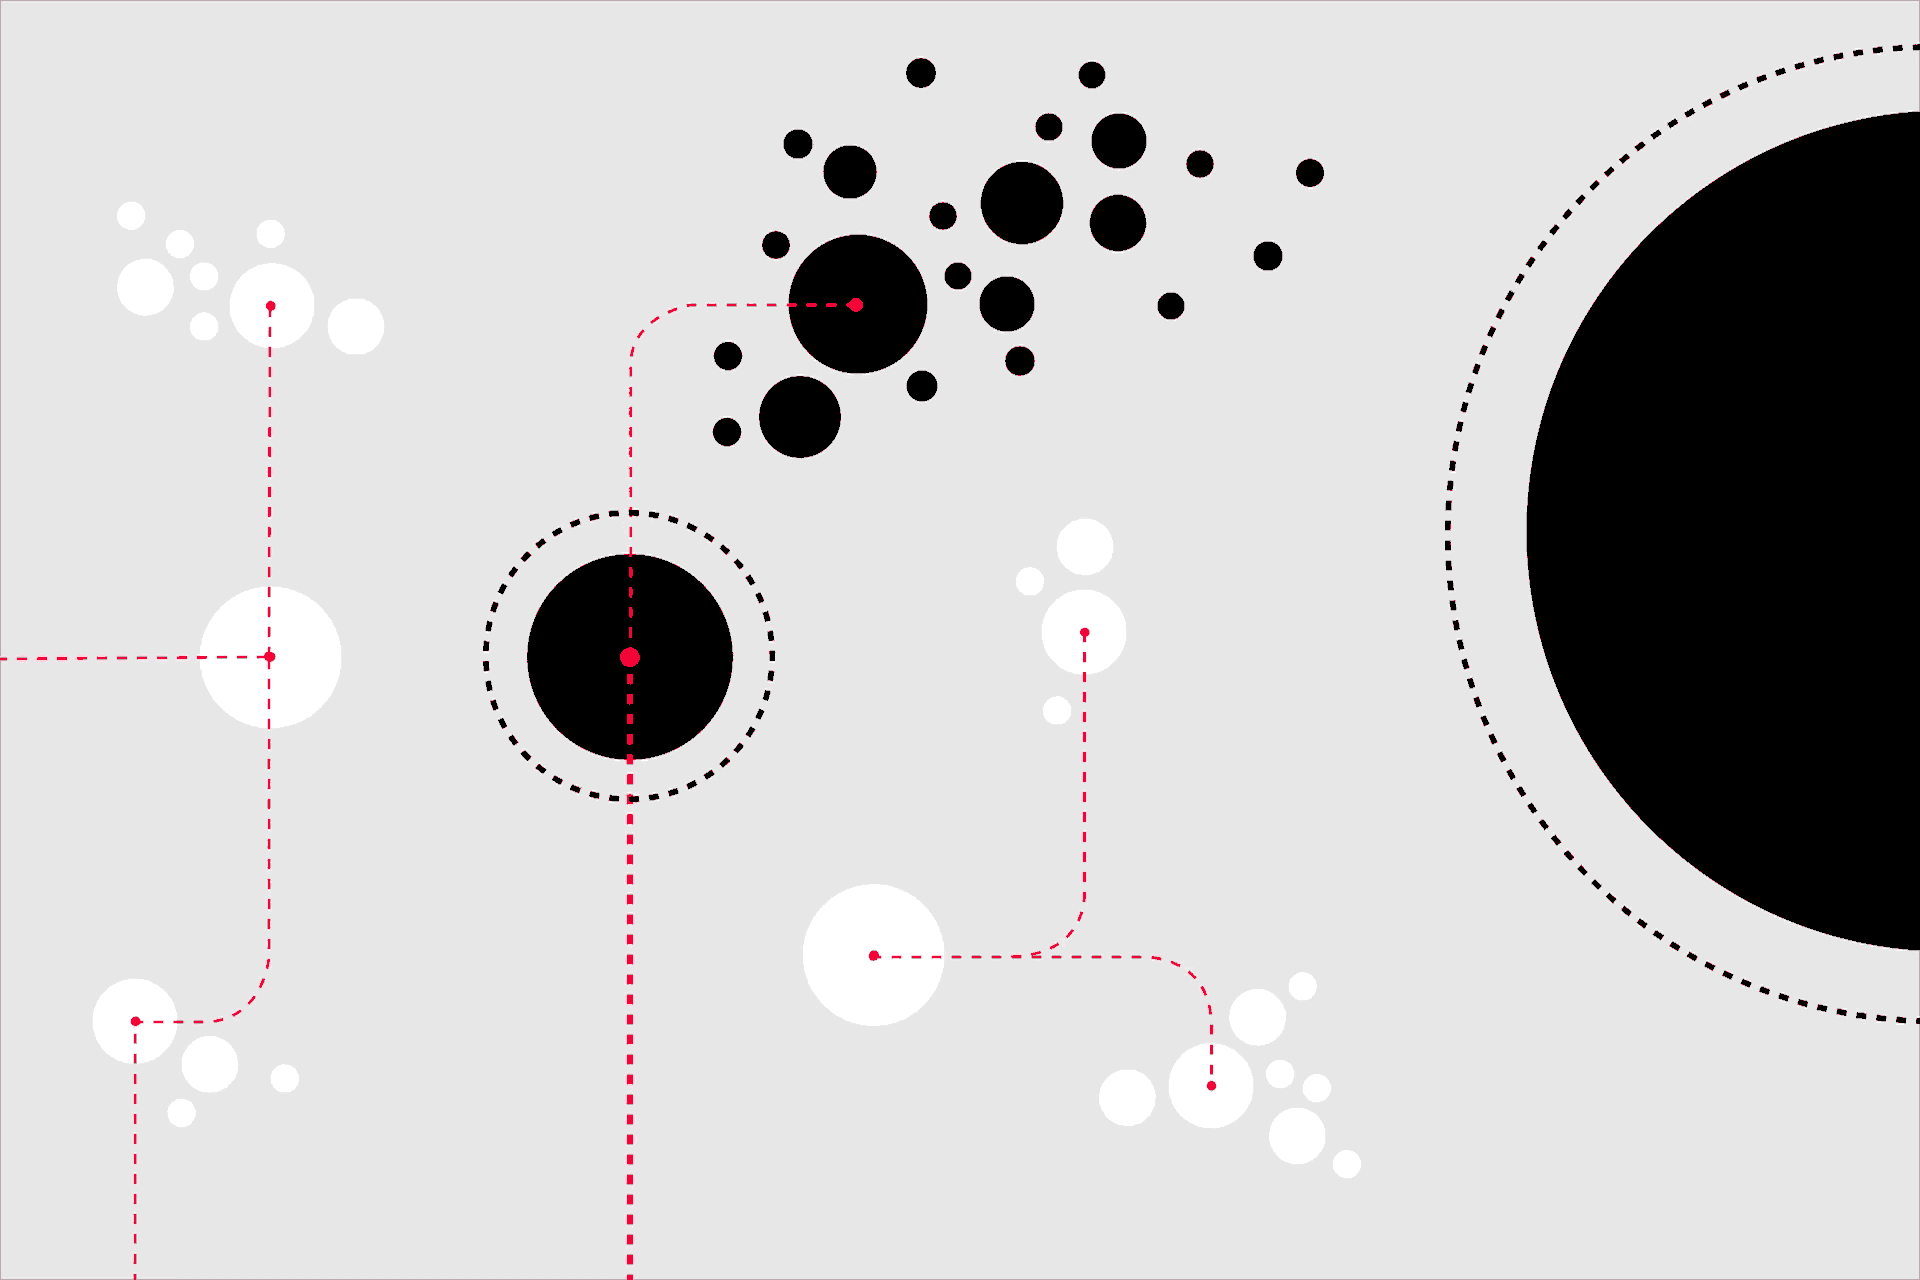 In dem Bild sind diverse kreisförmige, teils miteinander verbundene Gebilde zu sehen. In regelmäßigen Abständen bilden sich weitere rote Kreise, die sich durch Linien miteinander verbinden.